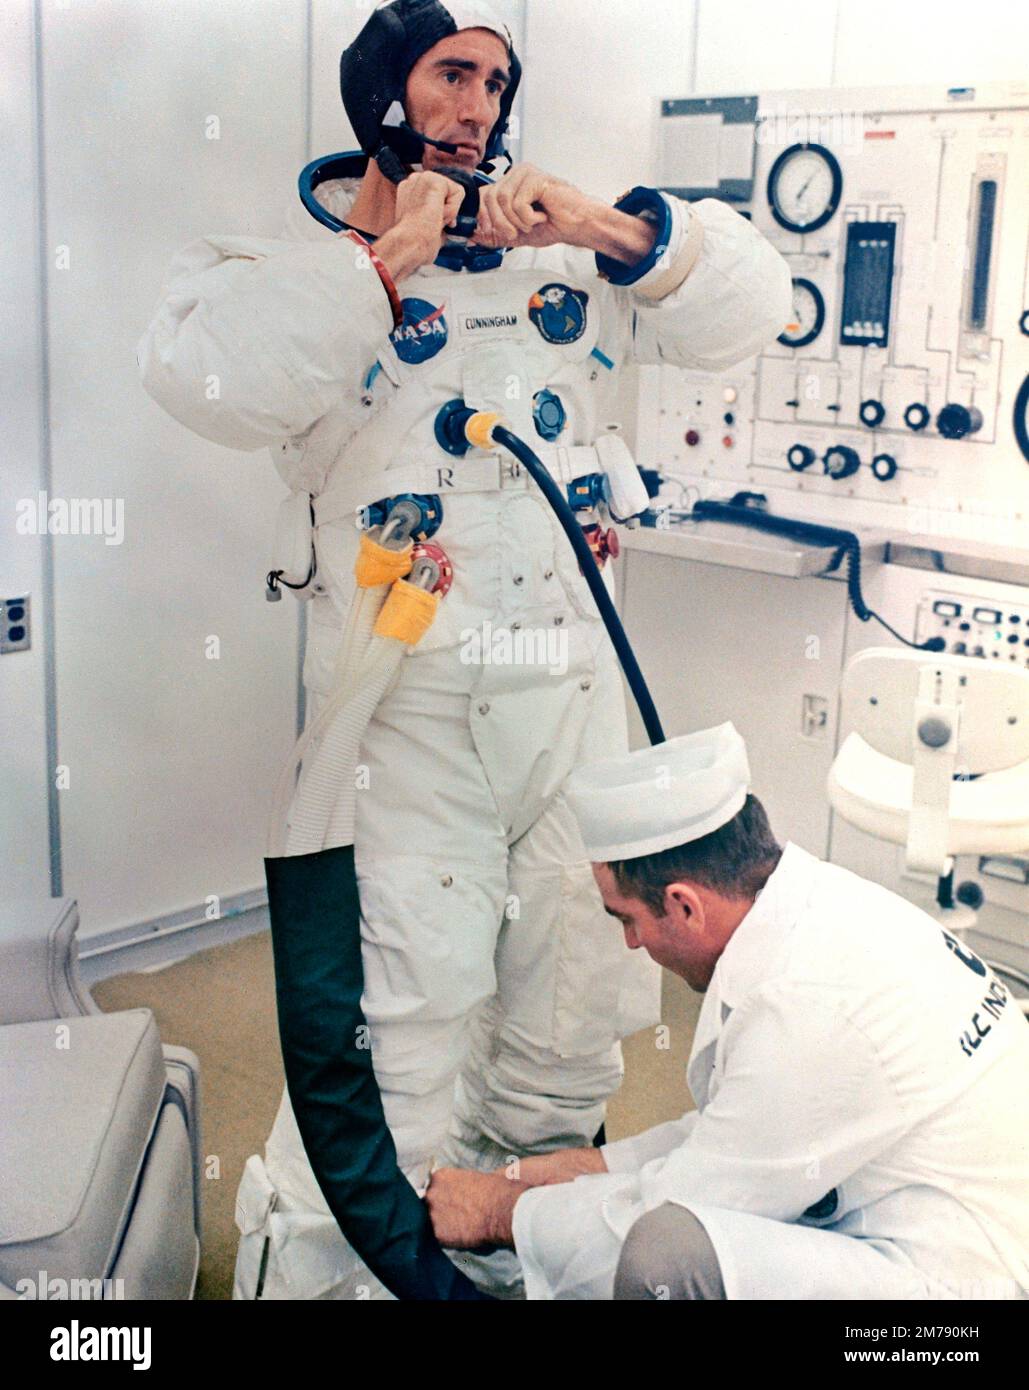 Cape Canaveral, Vereinigte Staaten. 11. Oktober 1968. Der NASA Apollo VII-Premier-Crew-Astronaut Walter Cunningham bereitet sich auf den Starttag im Kennedy Space Center am 11. Oktober 1968 in Cape Canaveral, Florida, vor. Cunningham starb am 4. Januar 2023 mit 90 Jahren, dem letzten überlebenden Mitglied der NASA Apollo 7 Mission. Stockfoto